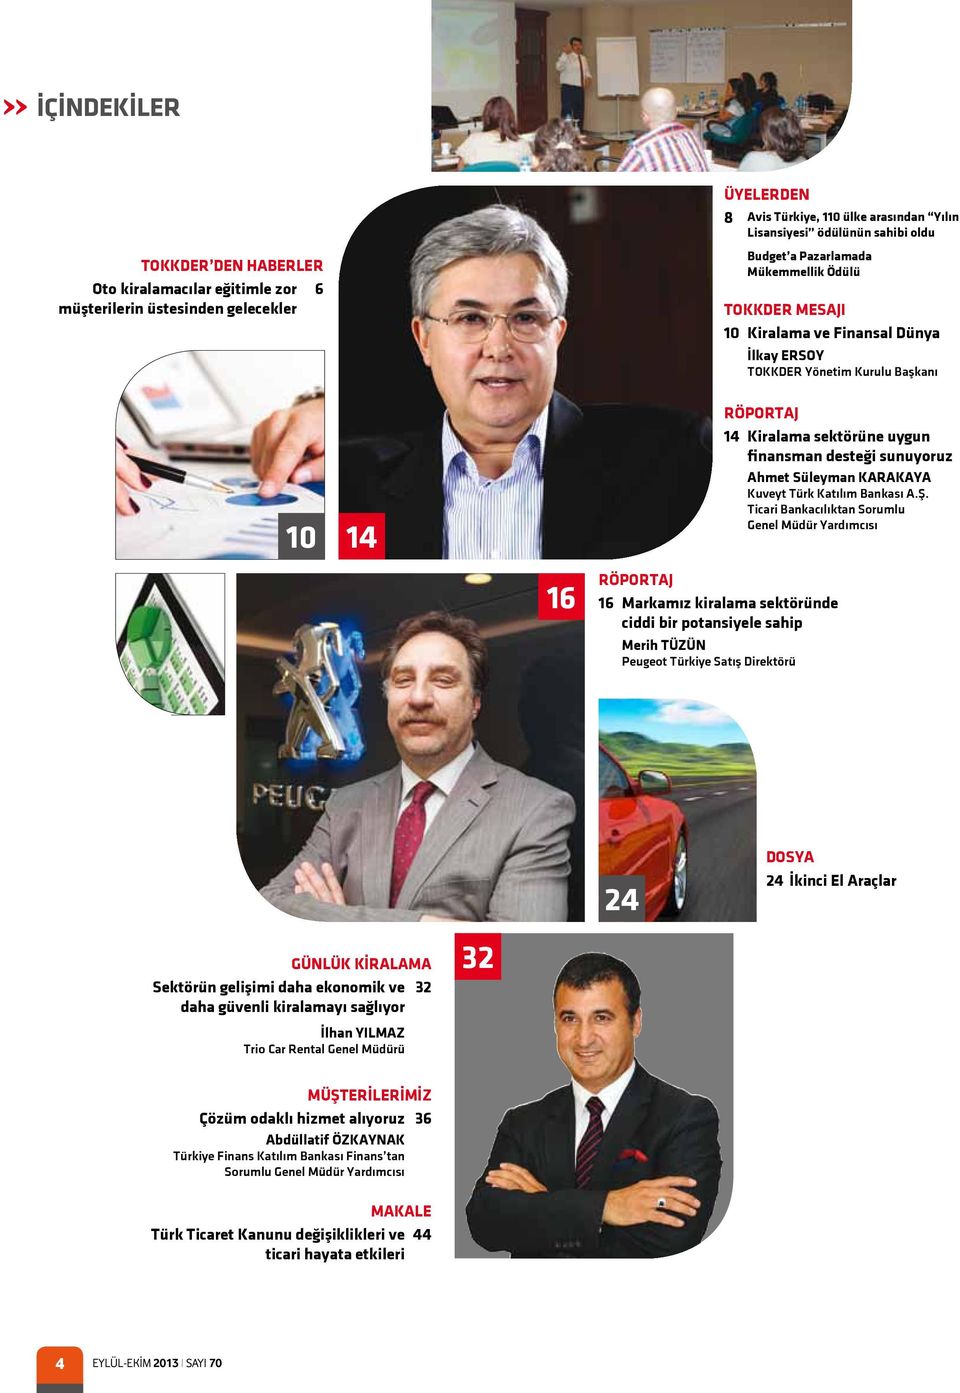 Süleyman KARAKAYA Kuveyt Türk Katılım Bankası A.Ş.